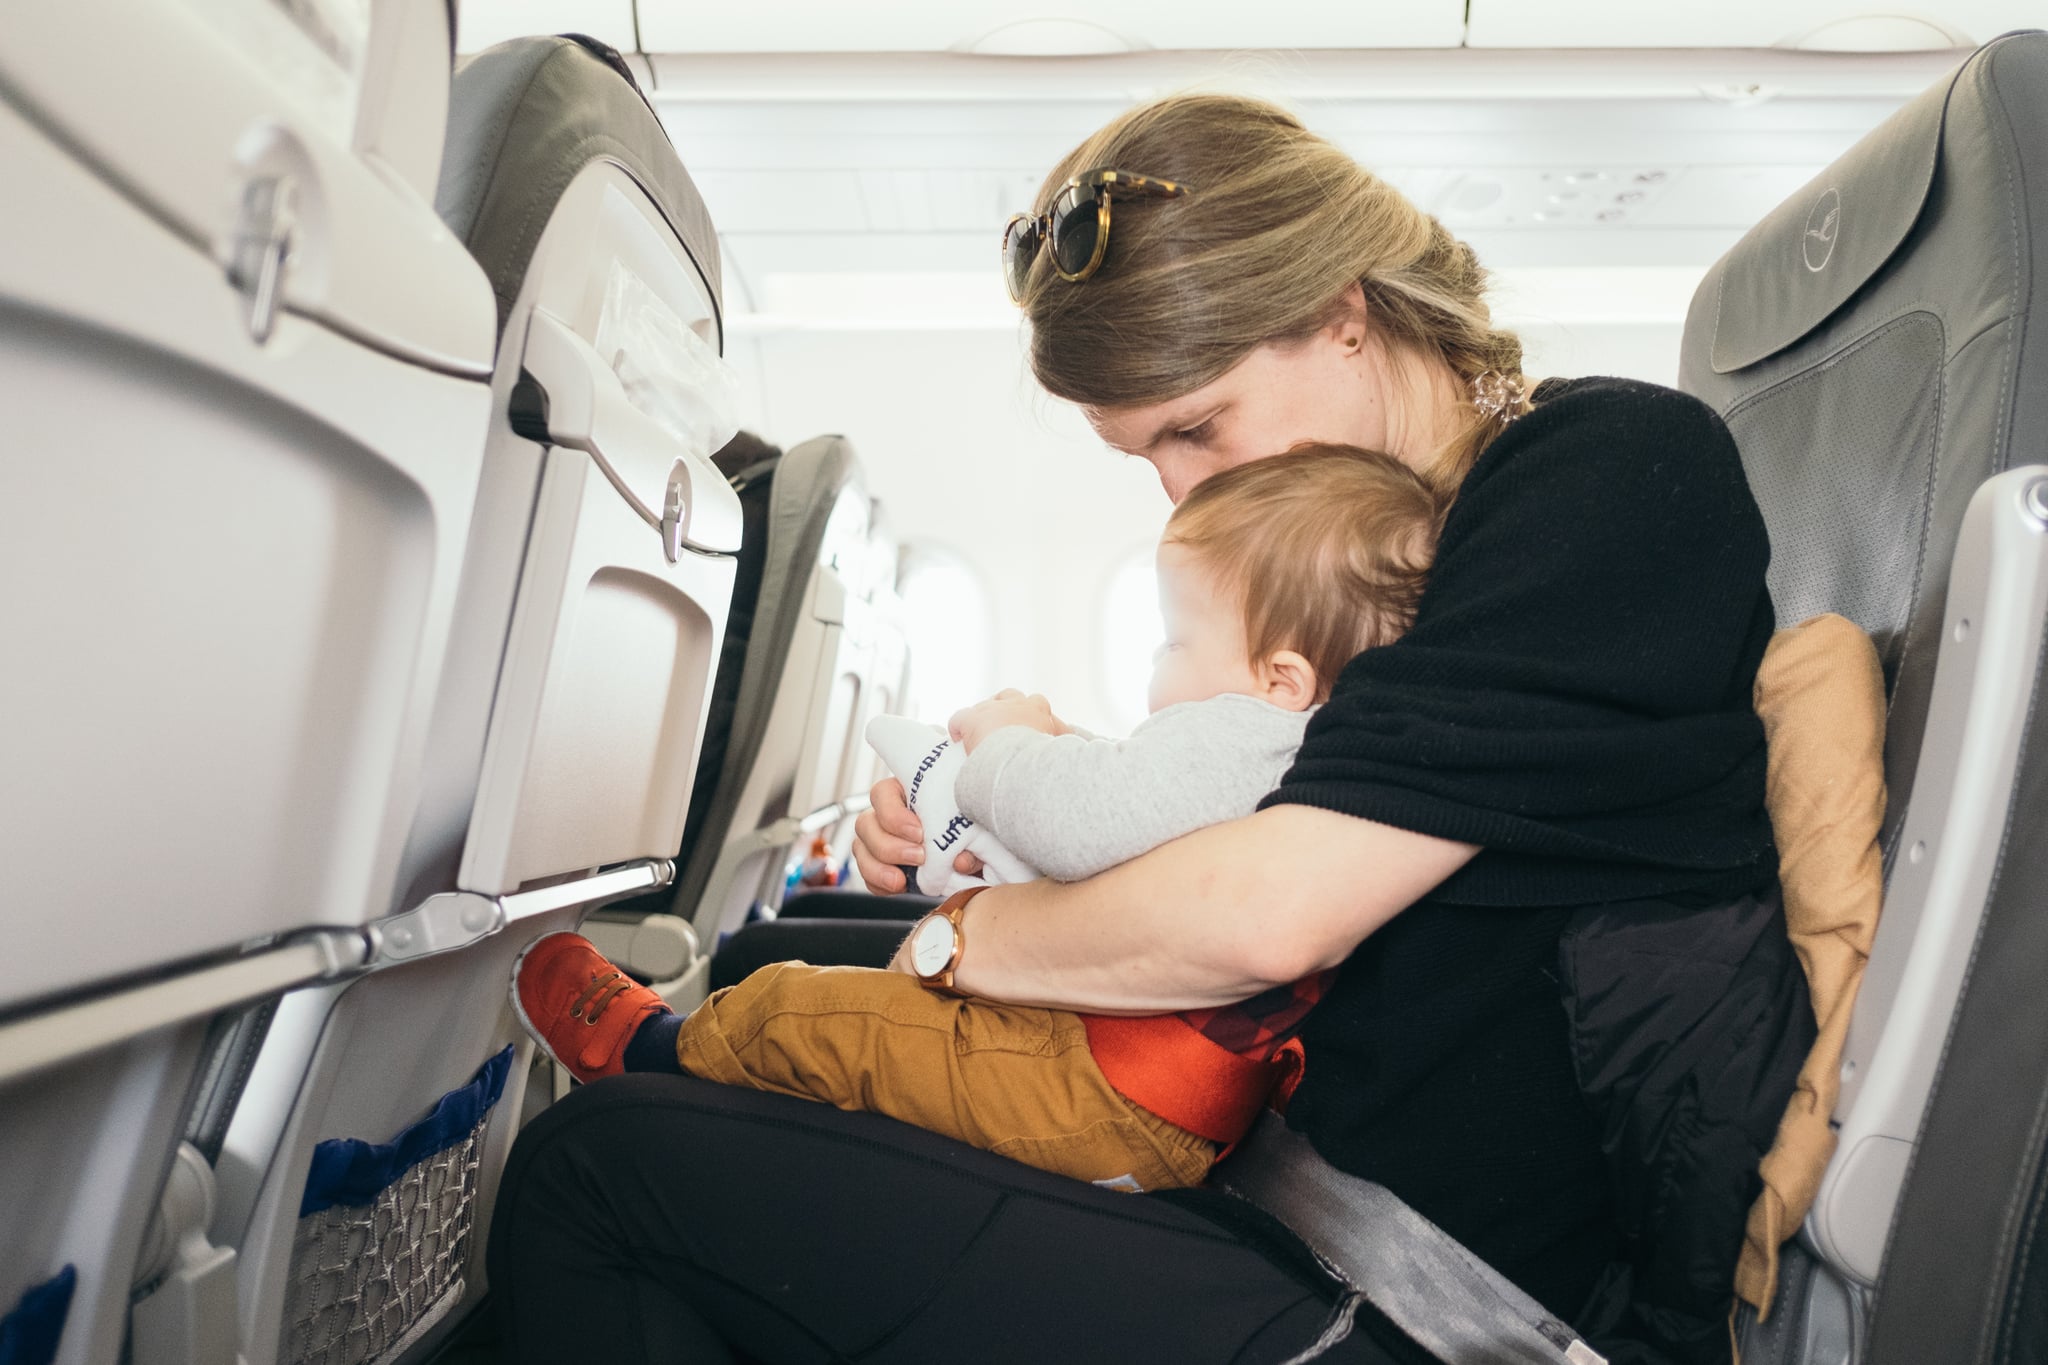 Frente a un avión, el bebé pélvico generalmente se encuentra en una fila de una pared parcial. En la clase económica, las familias generalmente se sientan detrás.